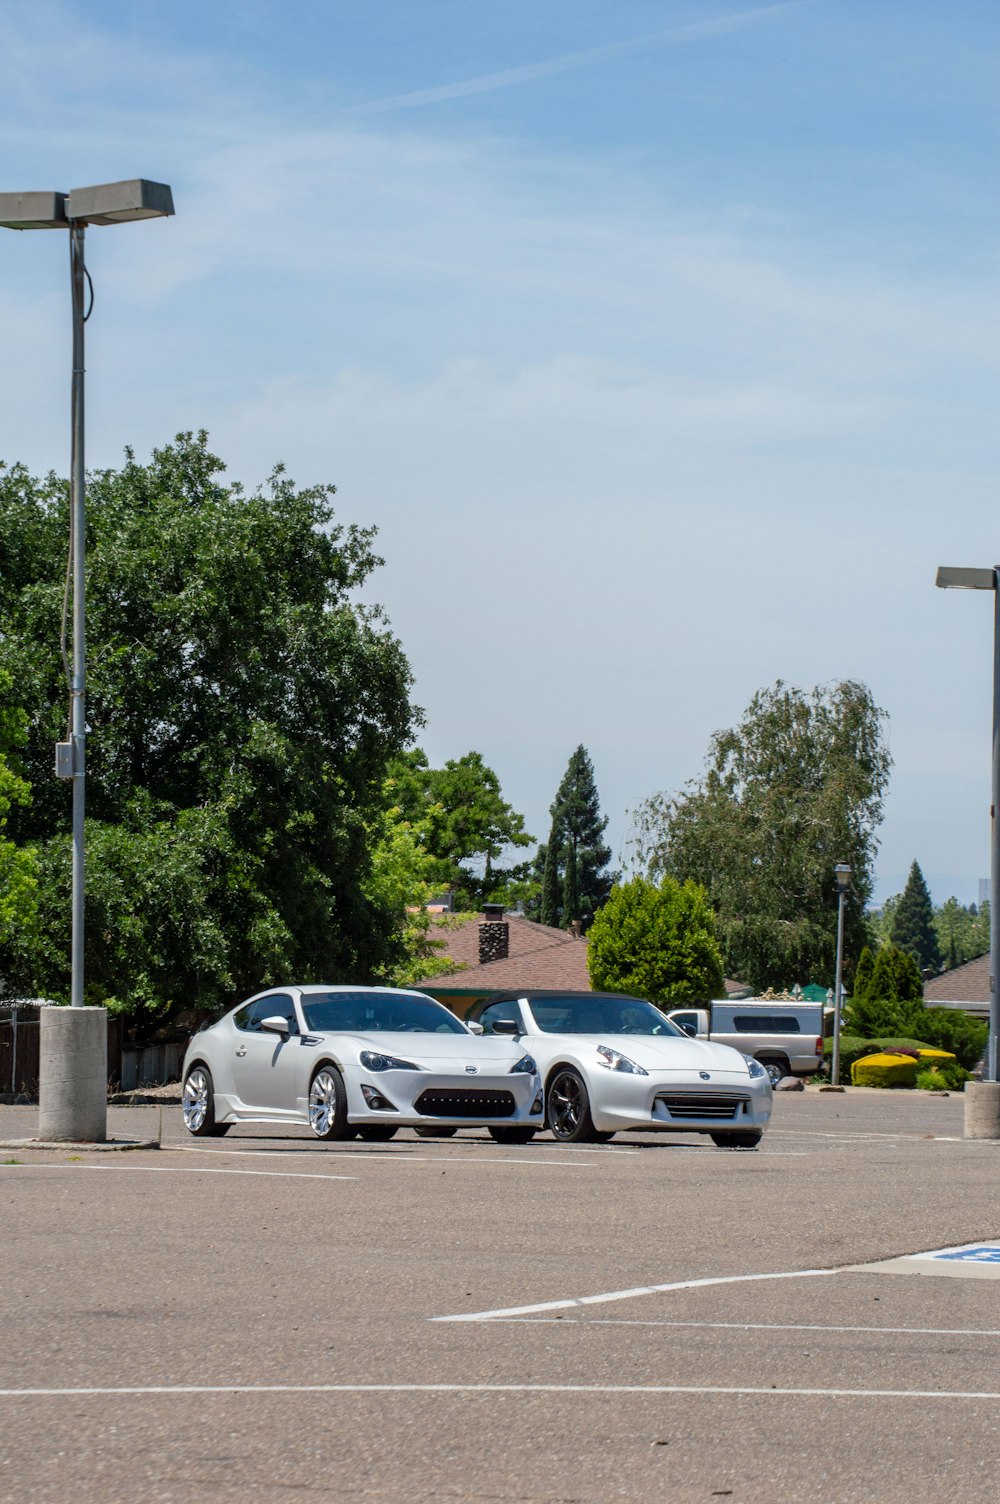 Deux voitures de sport blanches garées dans un parking